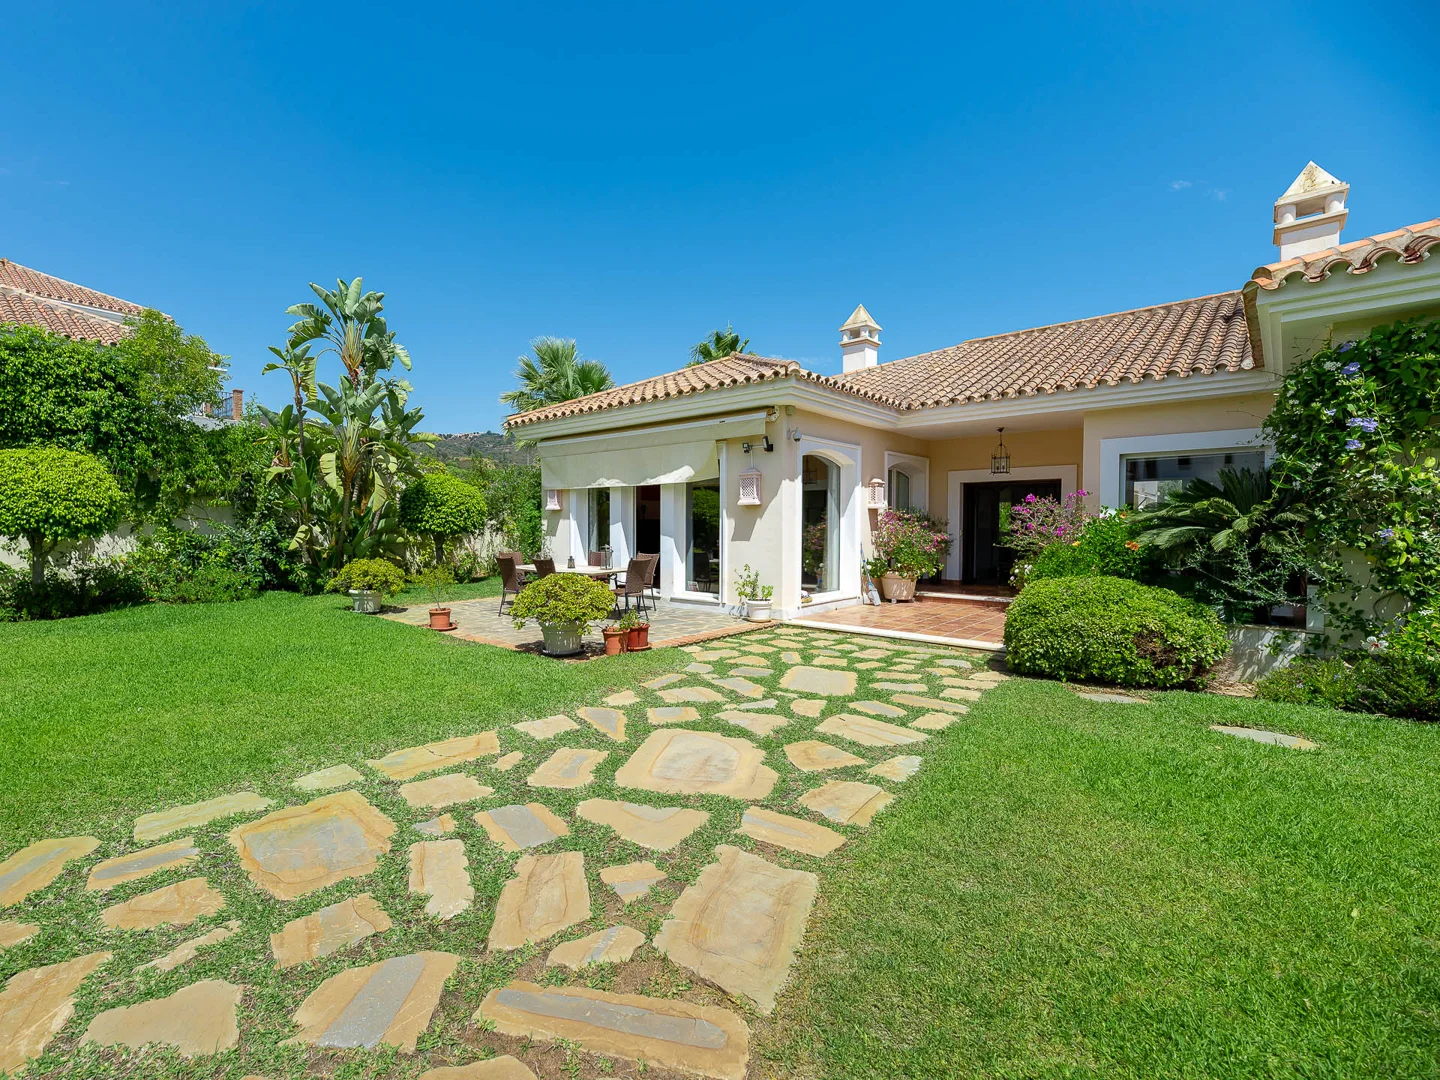 Charming Mediterranean style villa